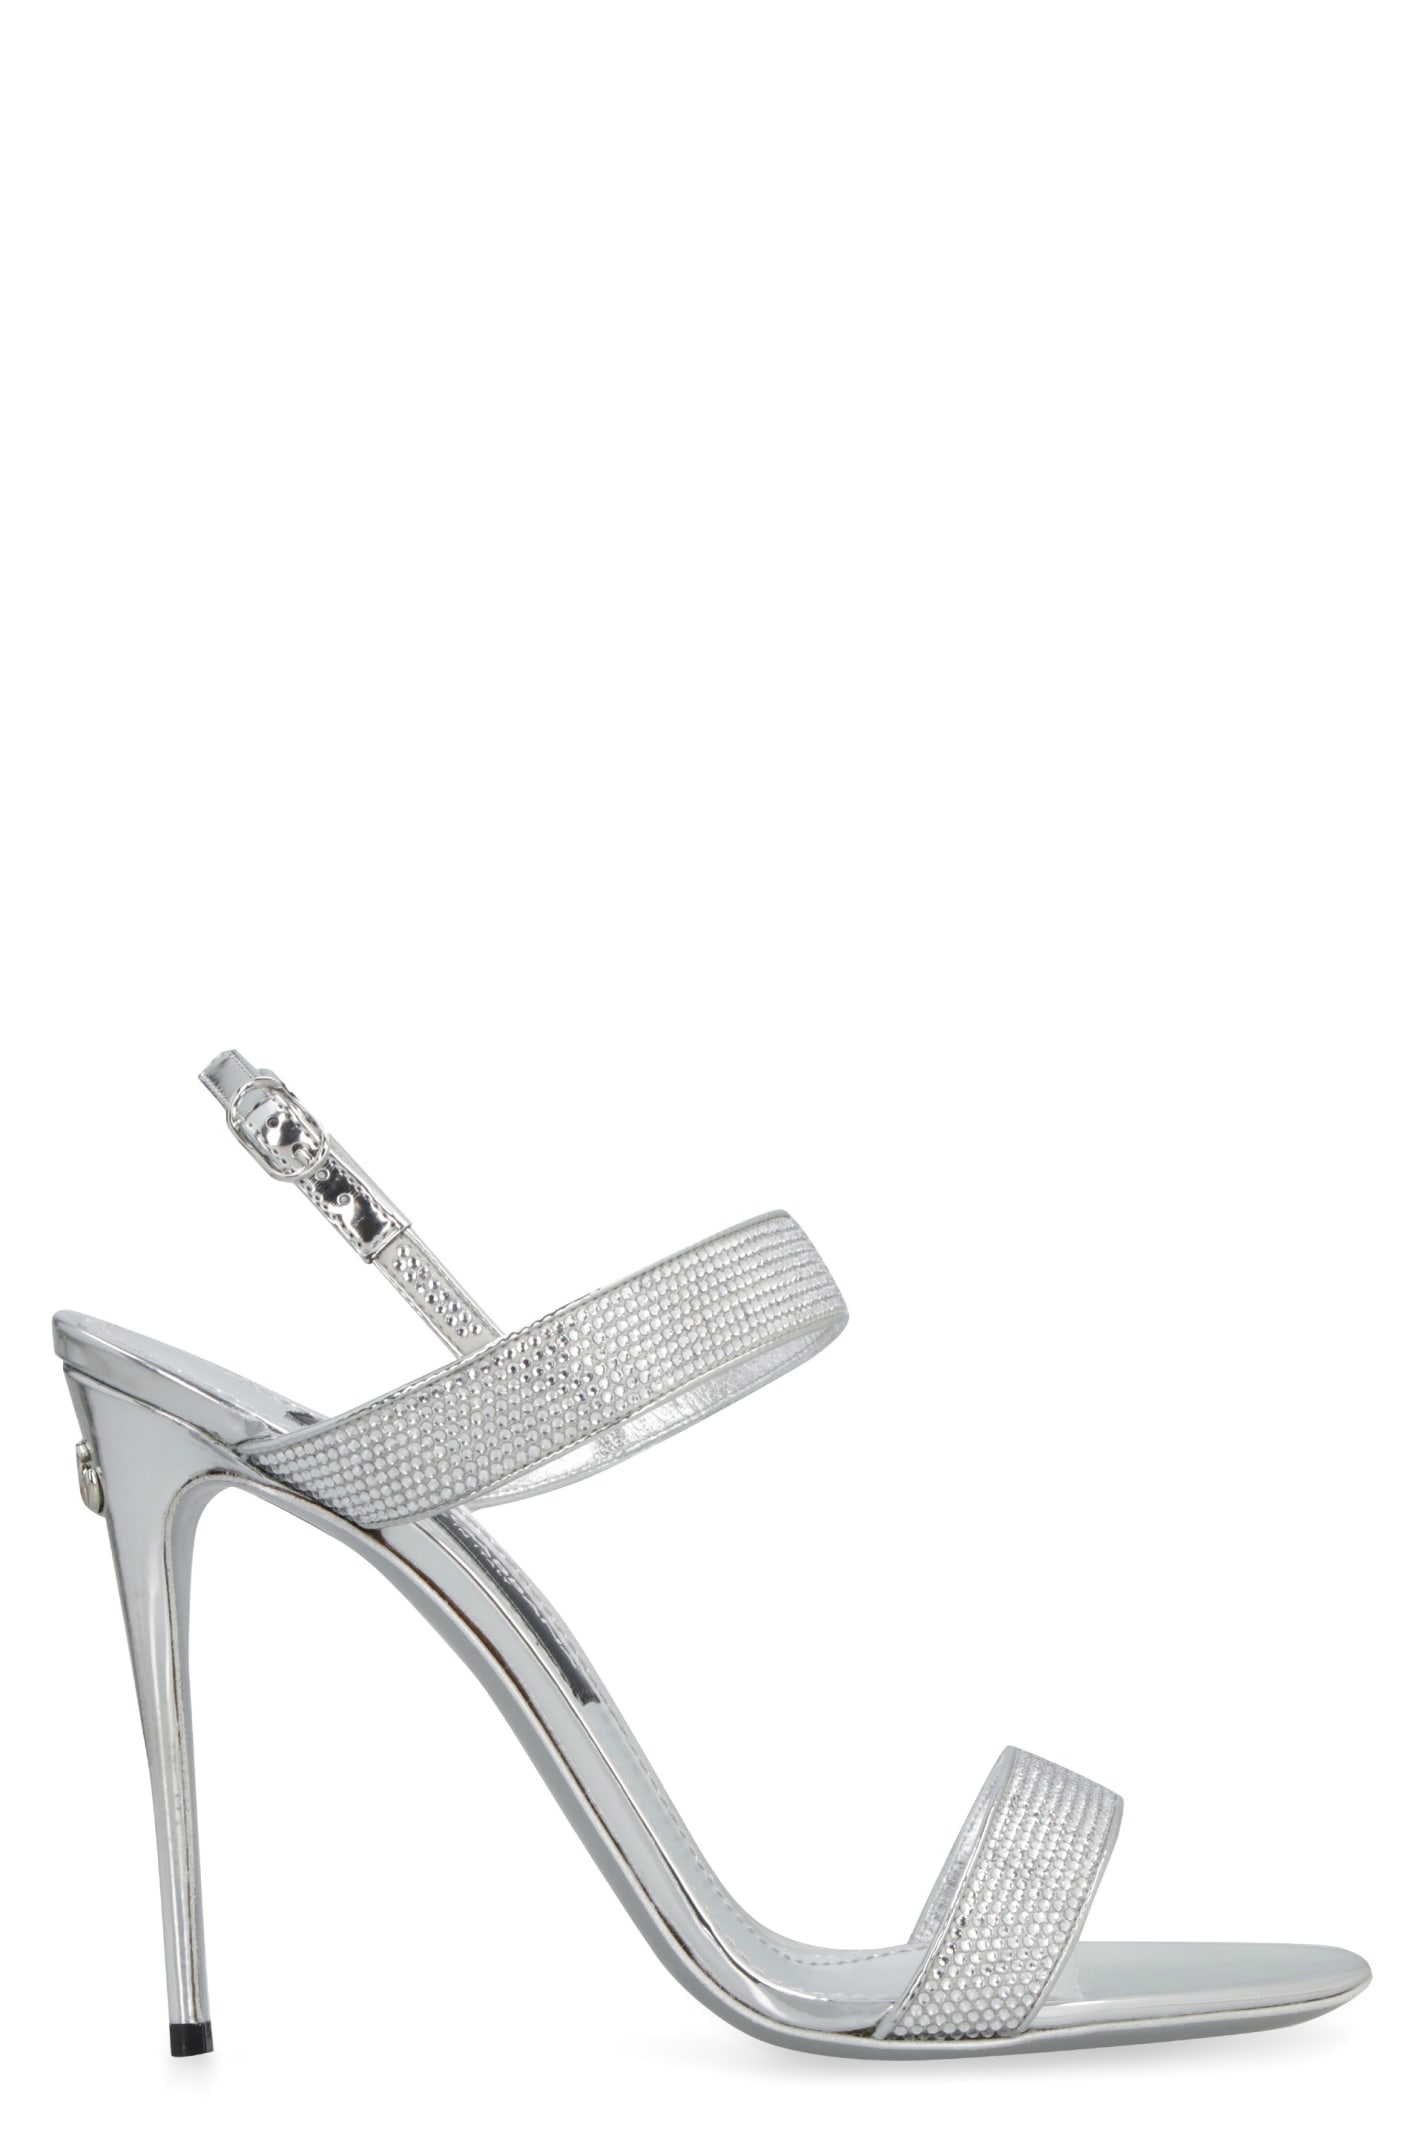 Dolce & Gabbana Kim Dolce&gabbana - Keira Metallic Leather Sandals In White